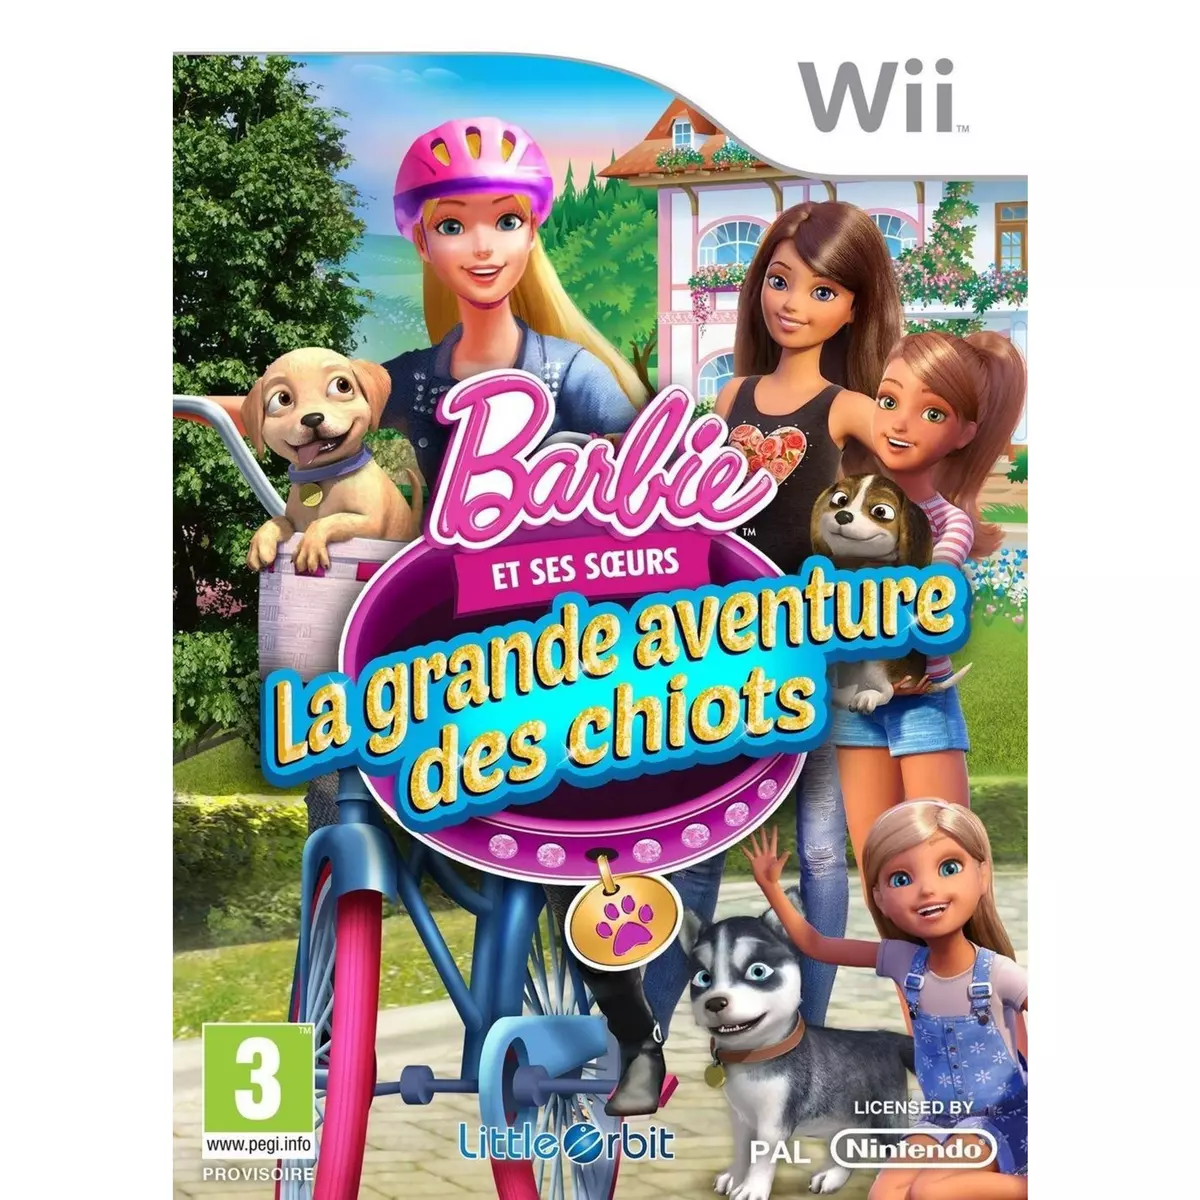 Barbie et la grande aventure des chiots - Wii